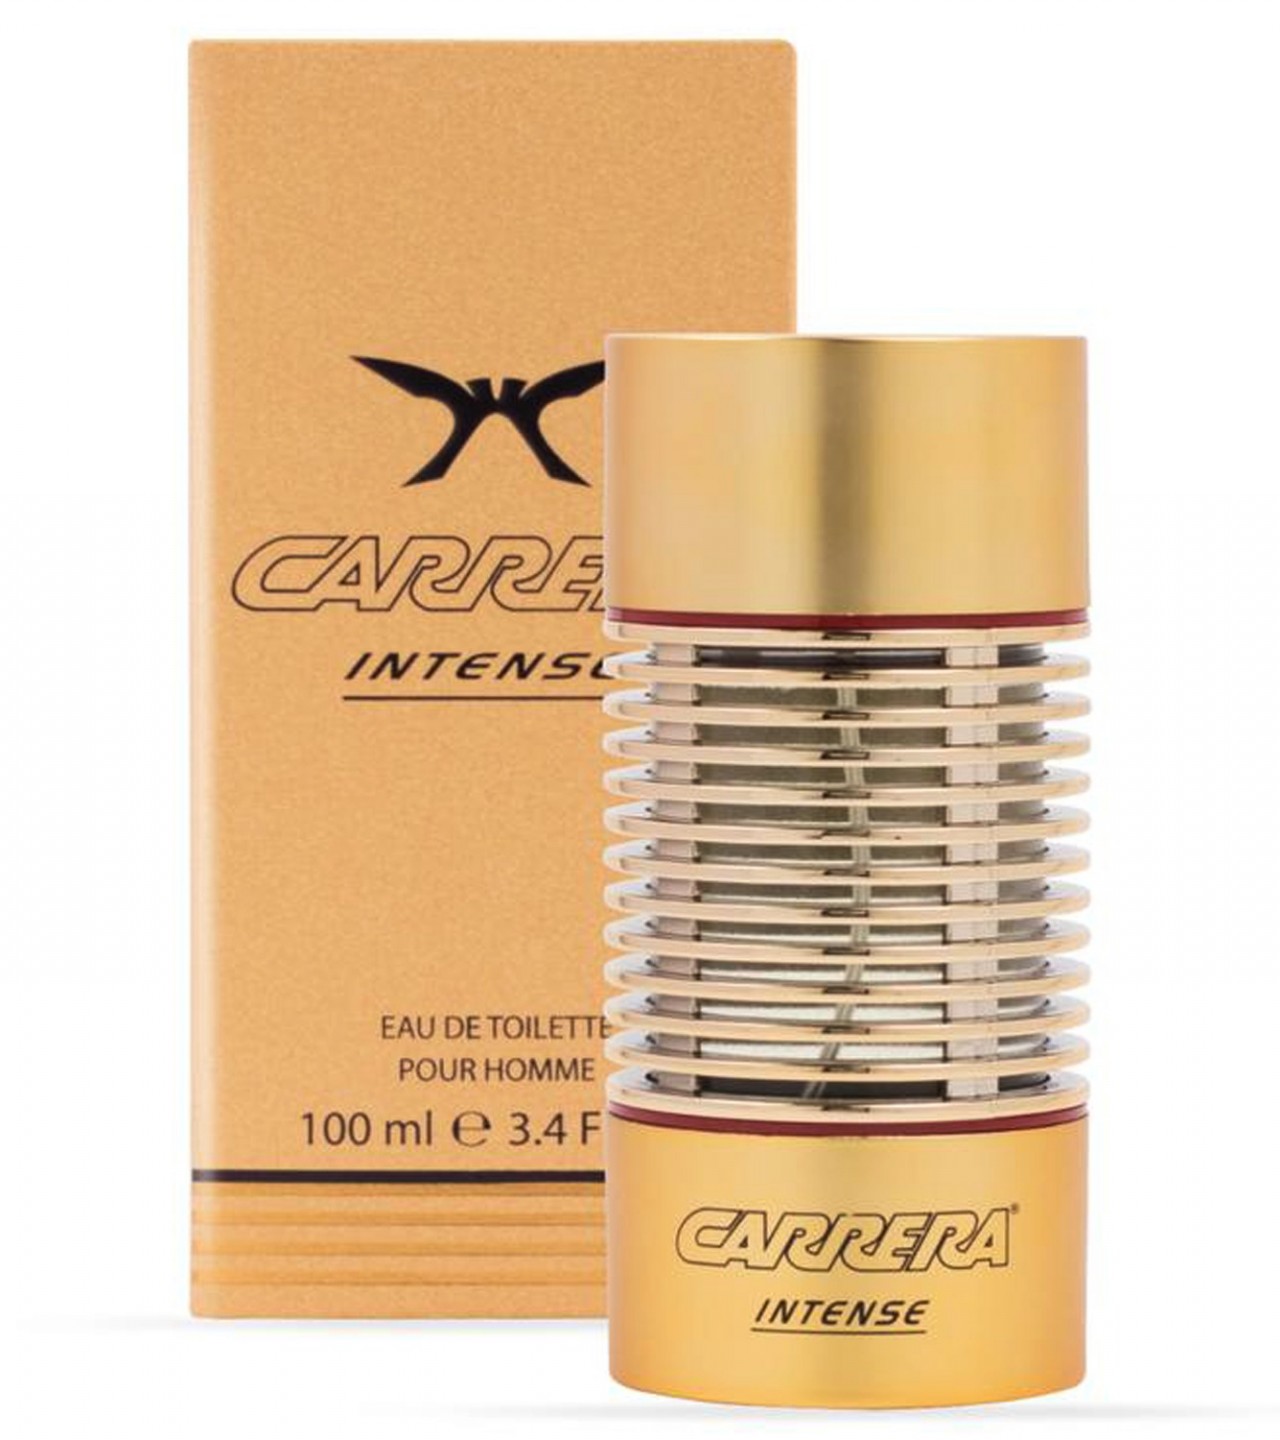 Carrera Intense Perfume For Men - 100 ml